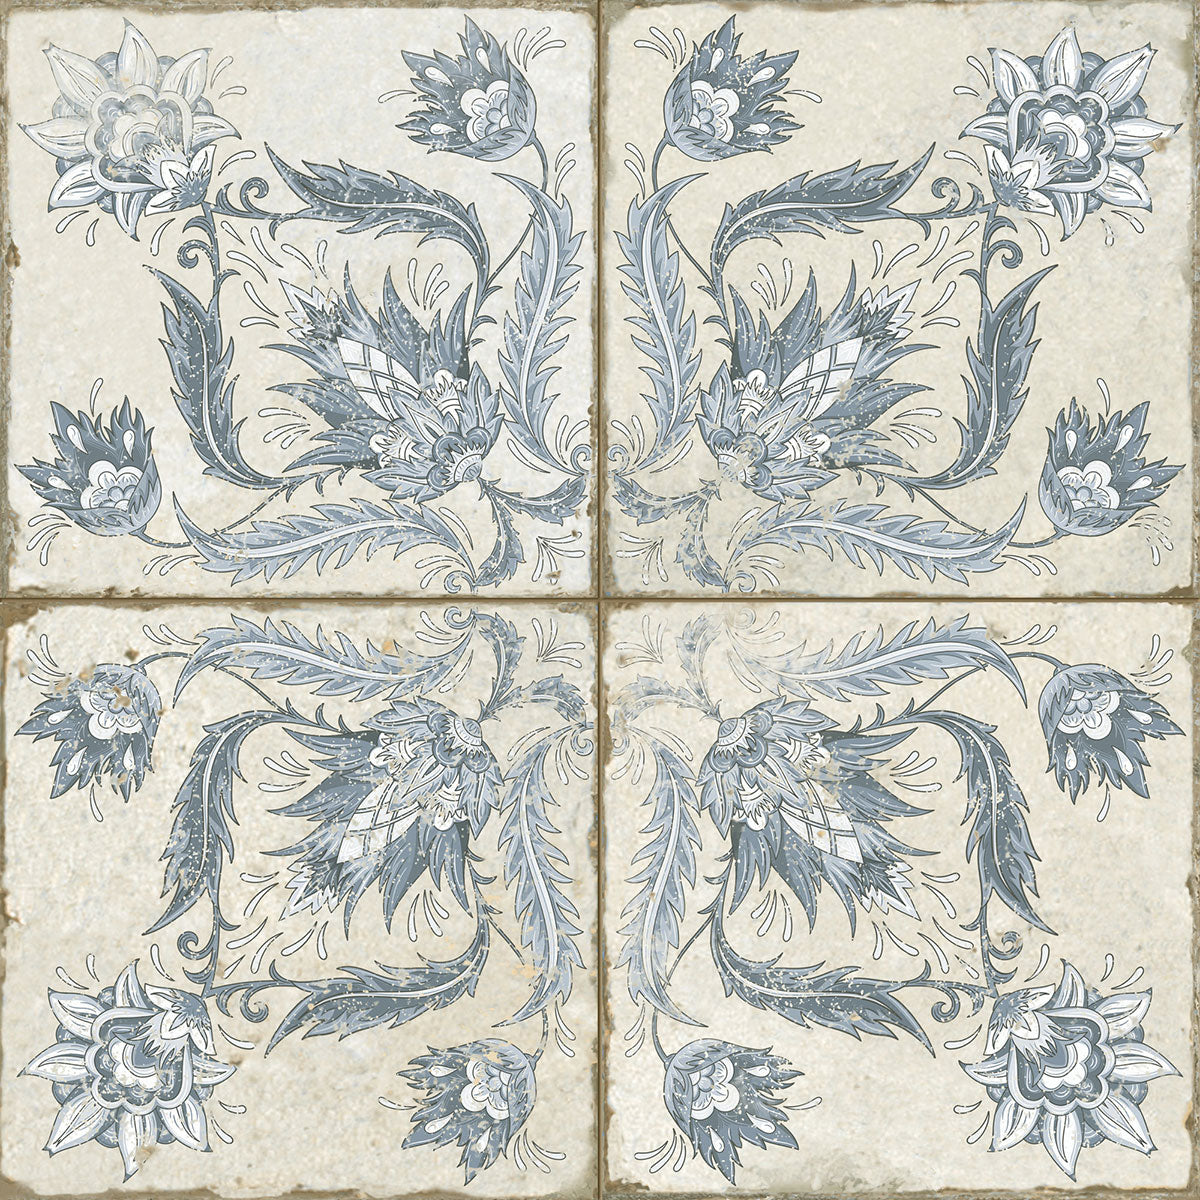 FS Ivy Blue Natural Tile 45 x 45cm